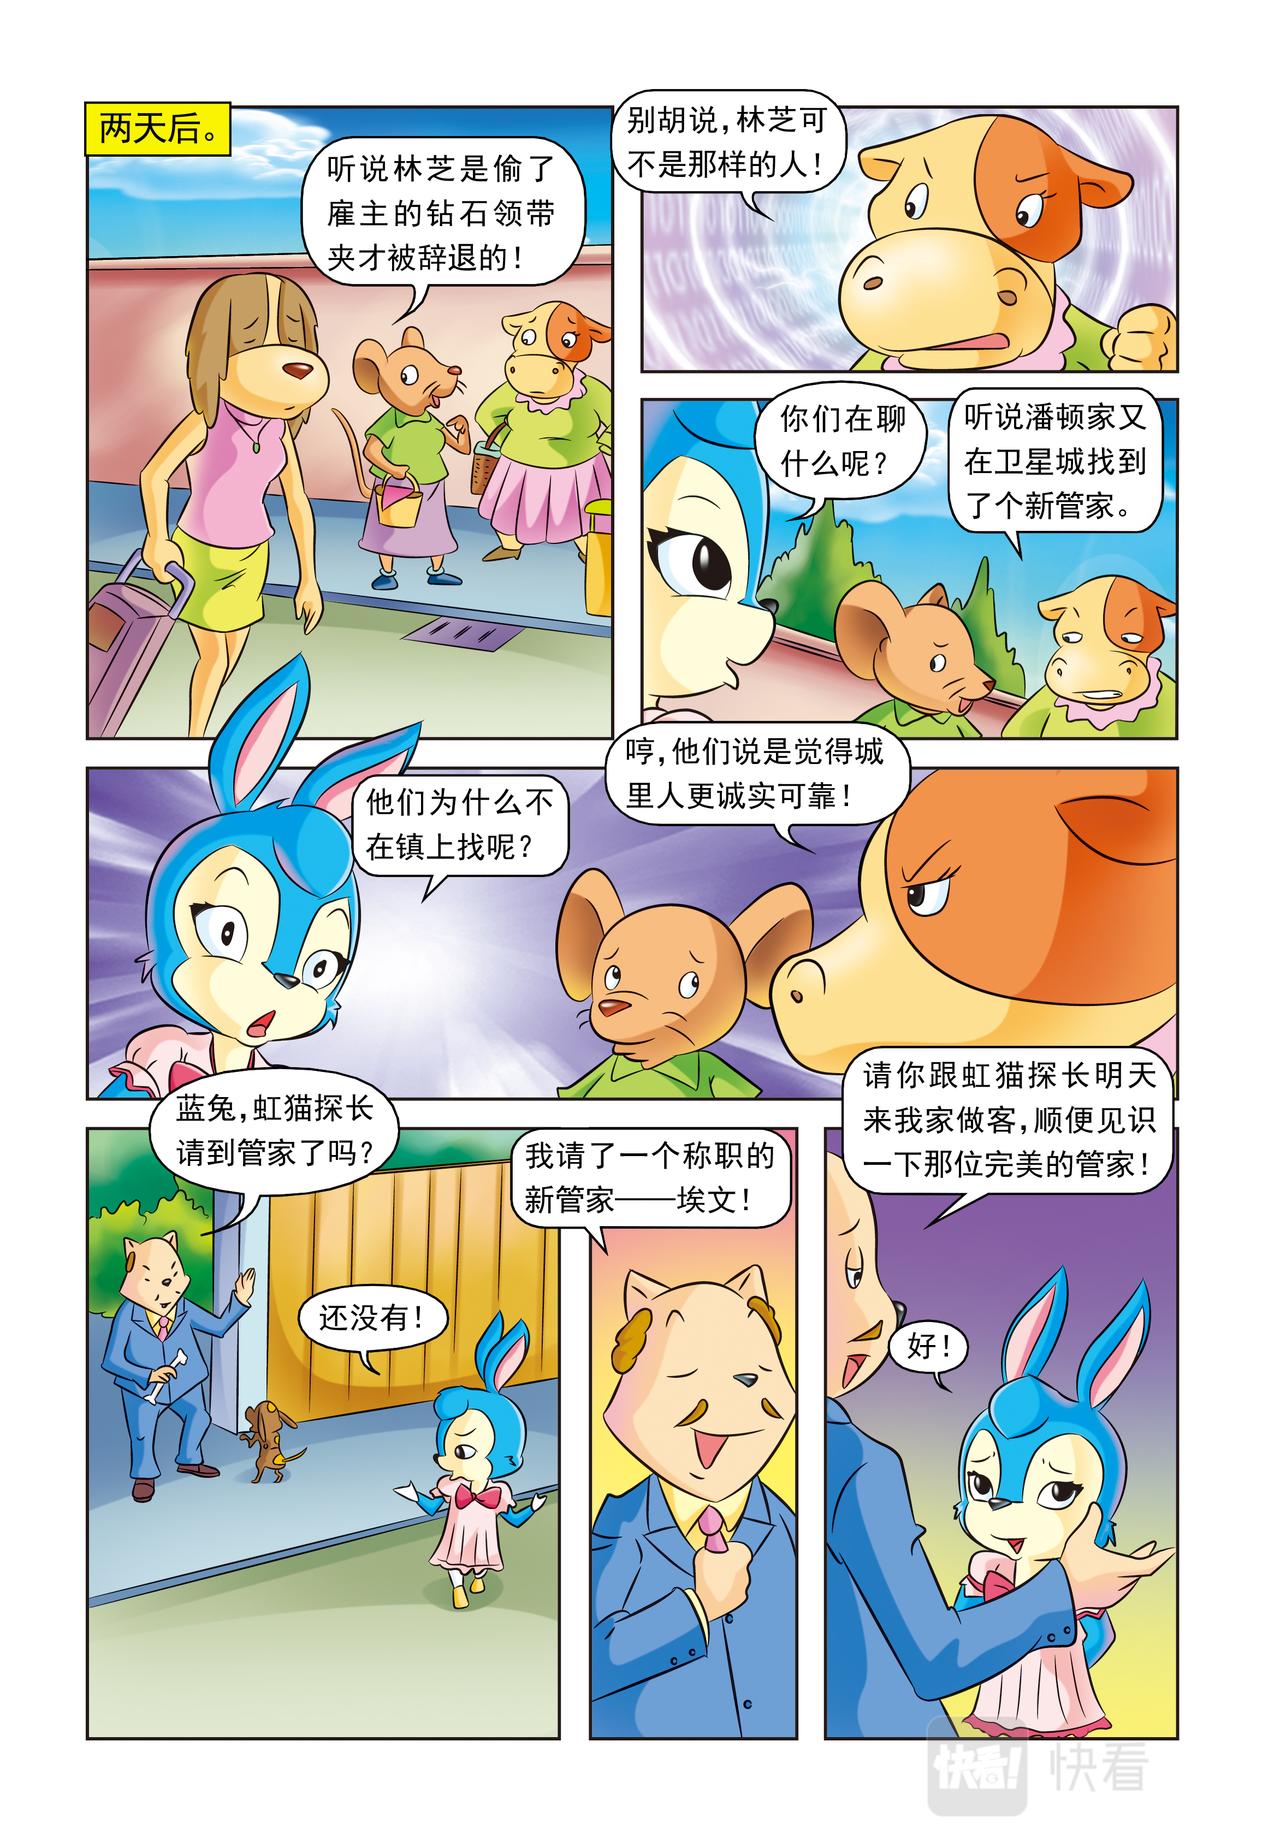 虹猫蓝兔惊险探案系列 - 第十五话虚构人物 - 2